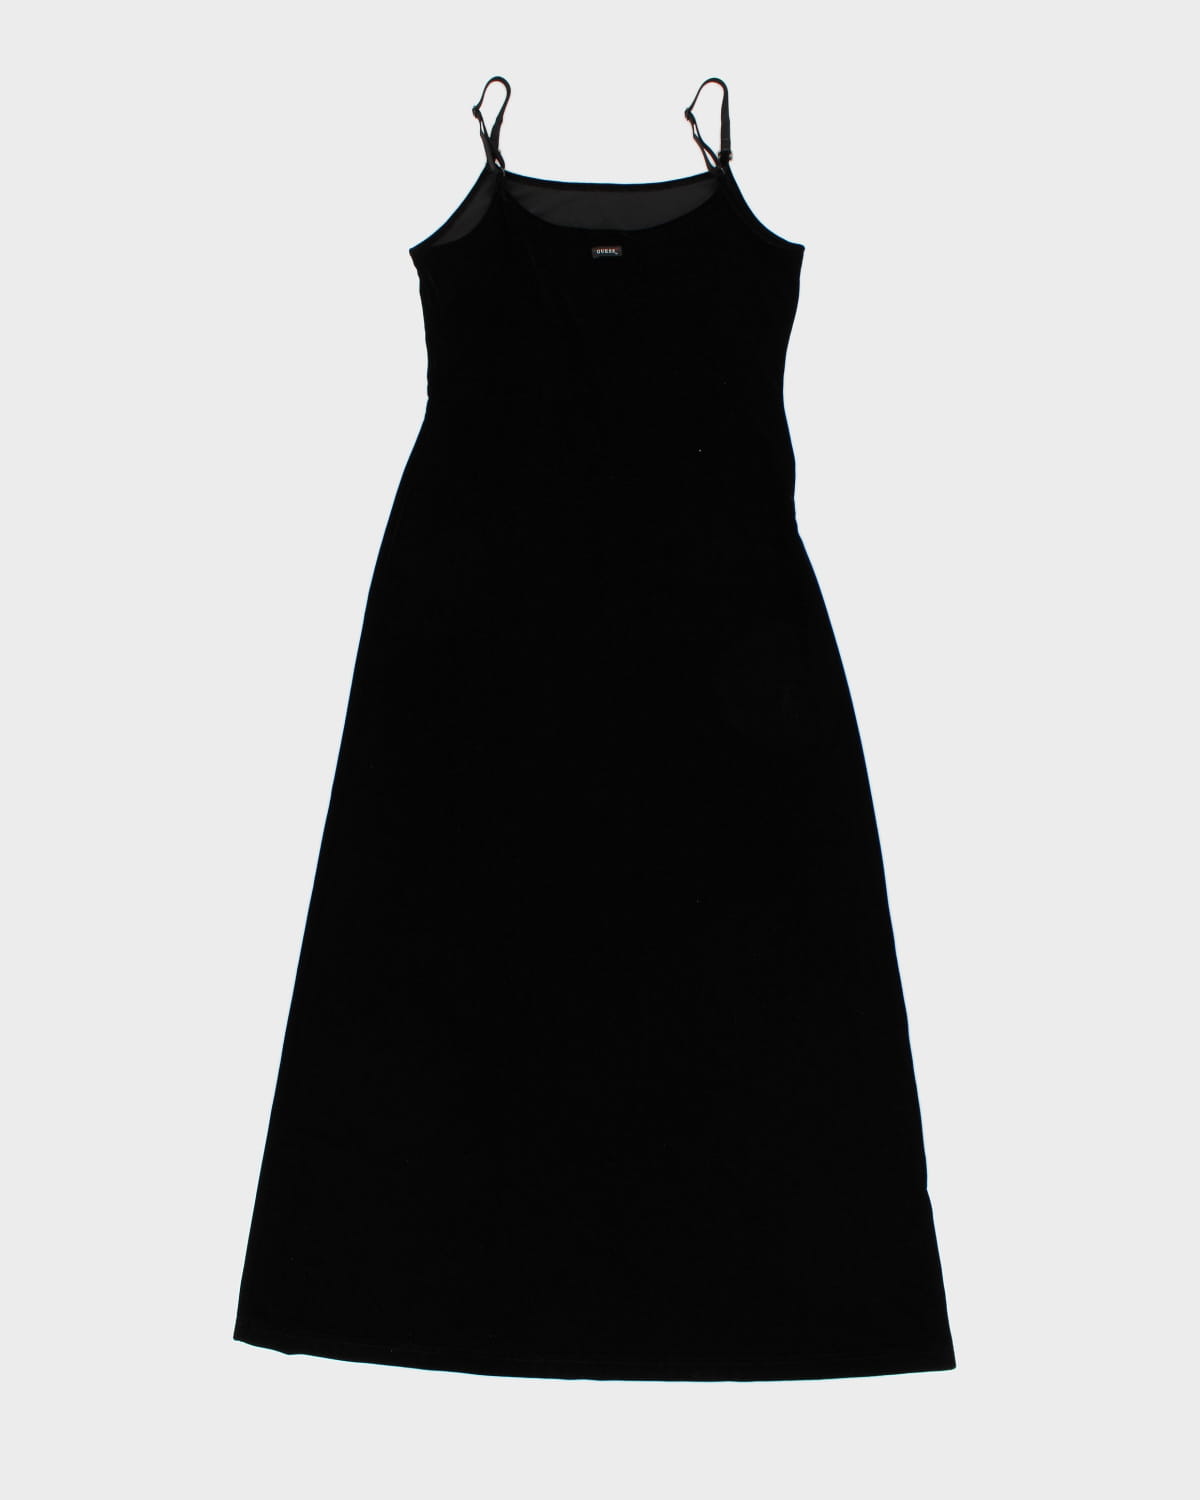 2000's Dream Guess Maxi Black Dress - L